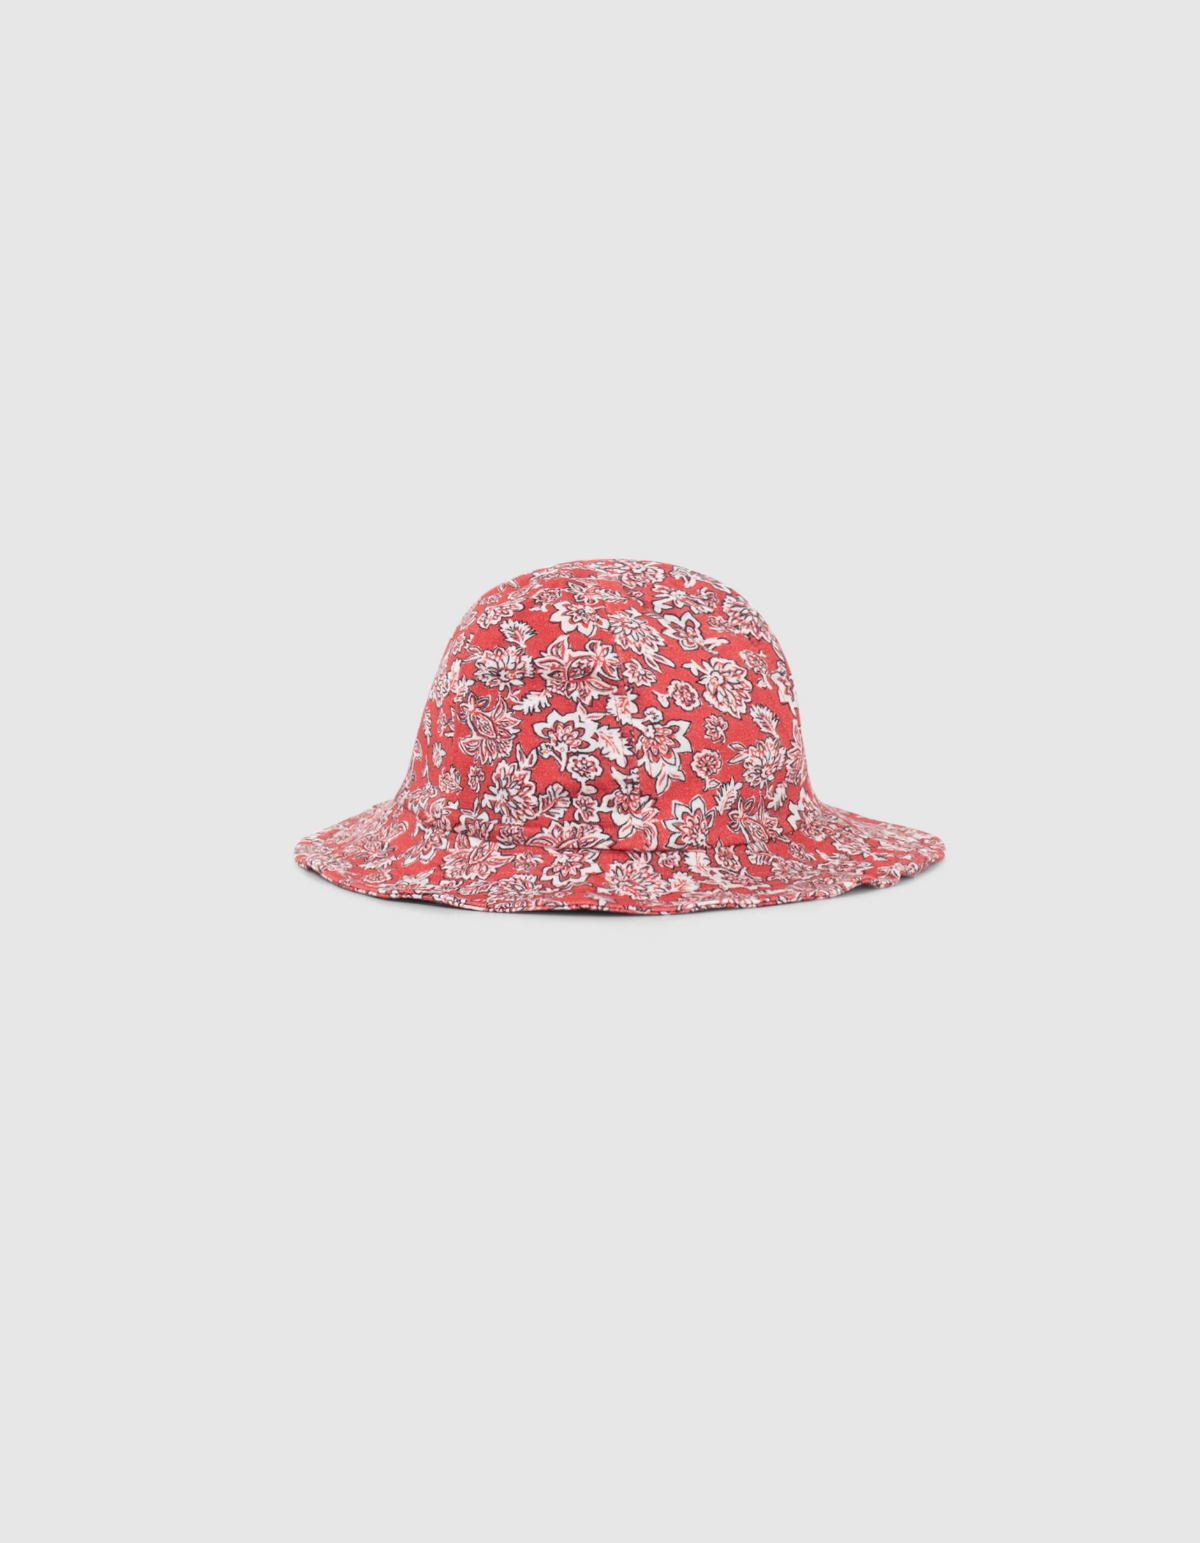 Chapeau rouge imprimé floral bébé fille